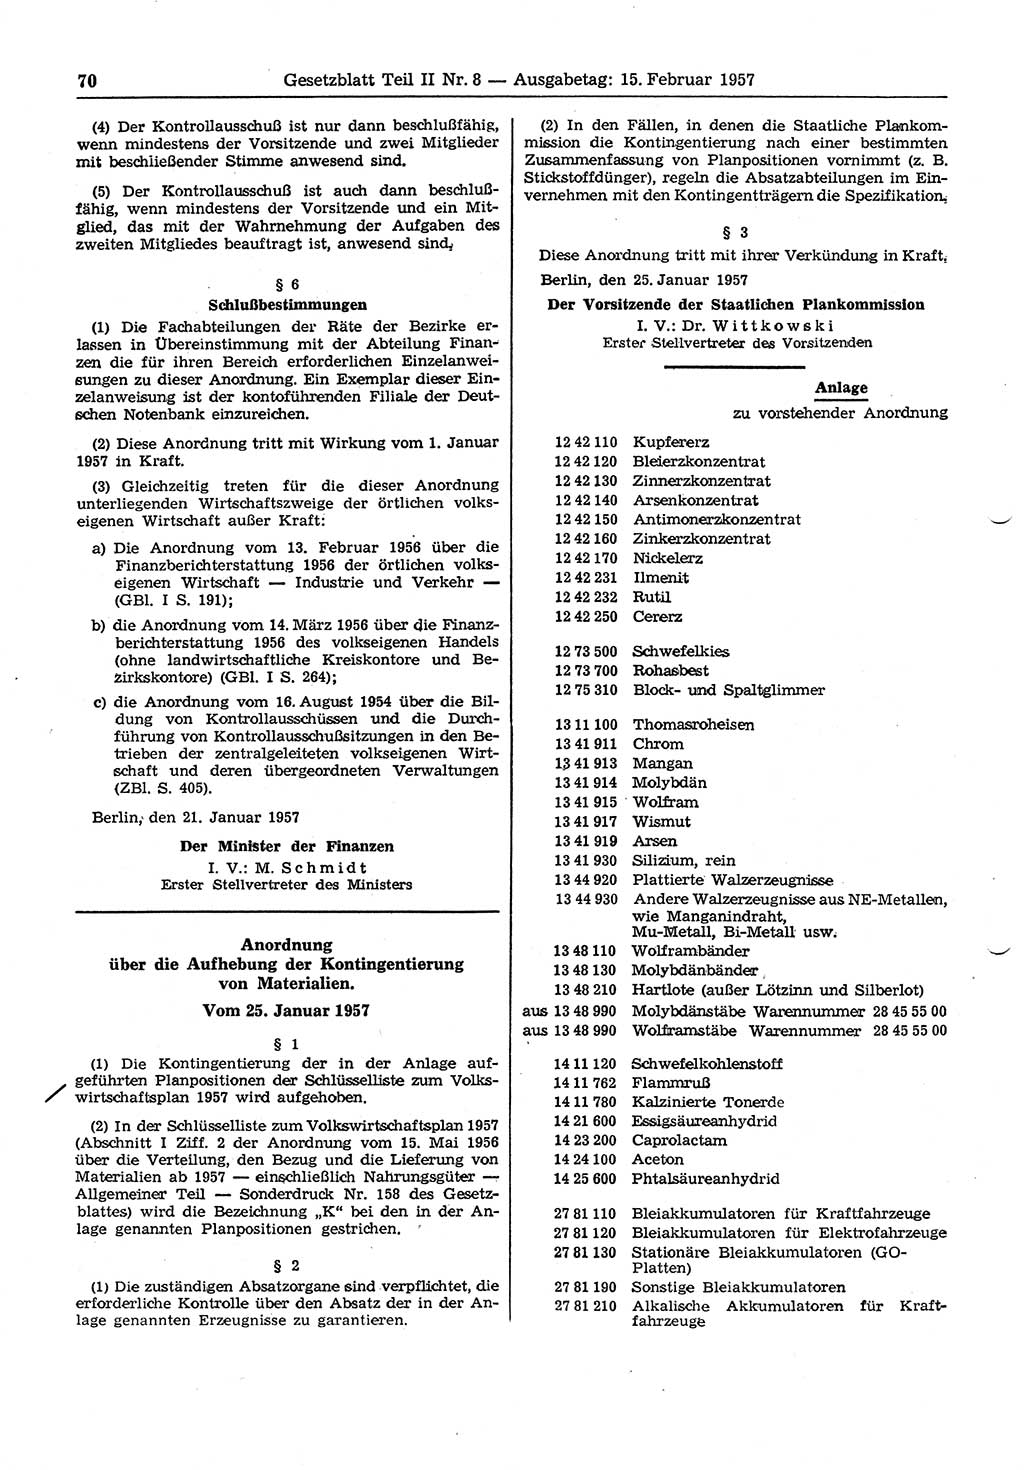 Gesetzblatt (GBl.) der Deutschen Demokratischen Republik (DDR) Teil ⅠⅠ 1957, Seite 70 (GBl. DDR ⅠⅠ 1957, S. 70)